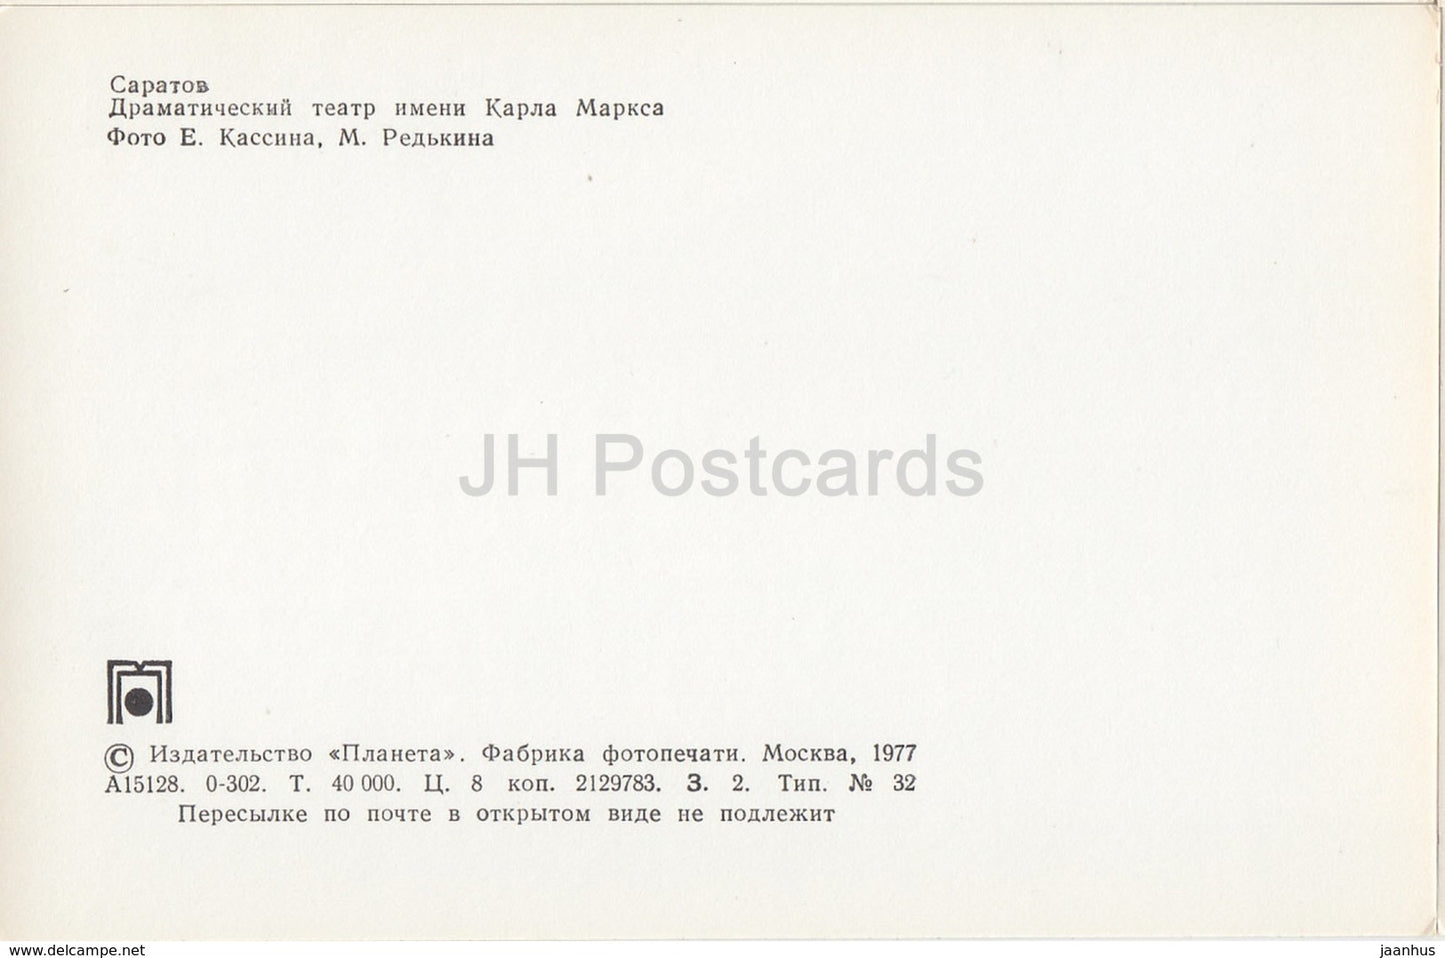 Saratov - Karl Marx Drama Theatre - 1977 - Russia USSR - unused - JH Postcards